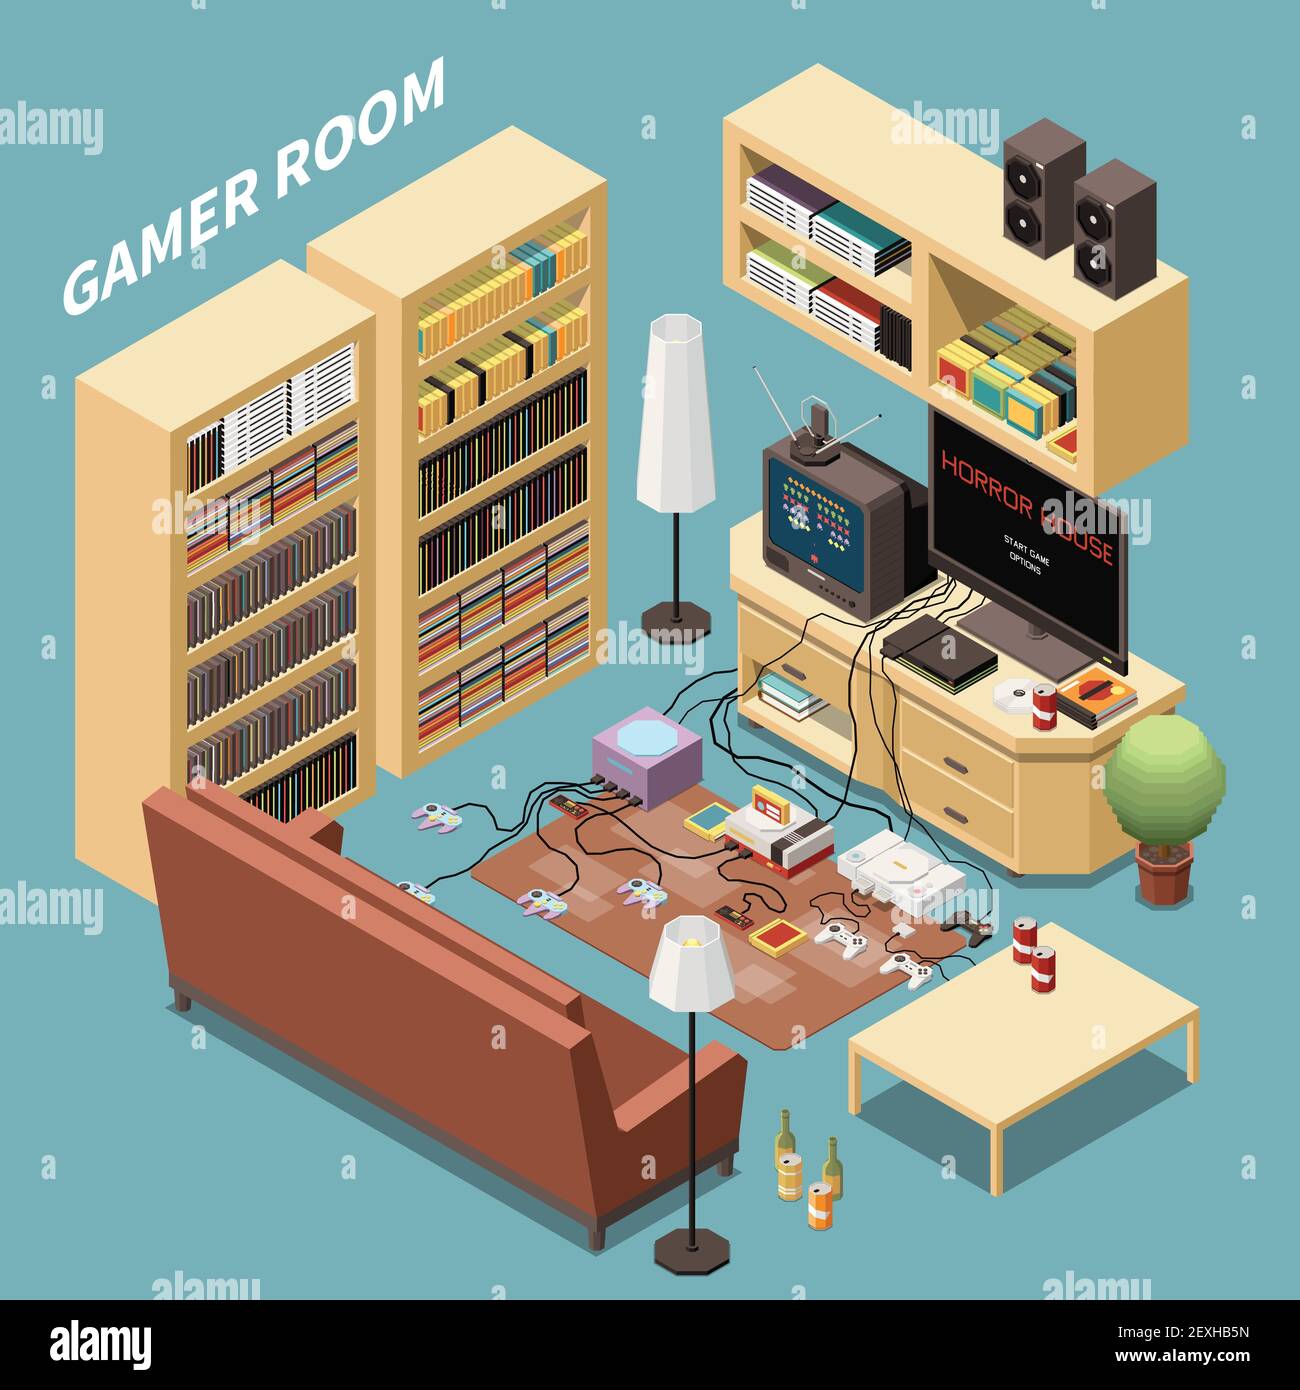 Gaming-Spieler isometrische Zusammensetzung mit Innenansicht des Wohnzimmers Mit Möbelschrank Racks und Konsolen Vektor-Illustration Stock Vektor